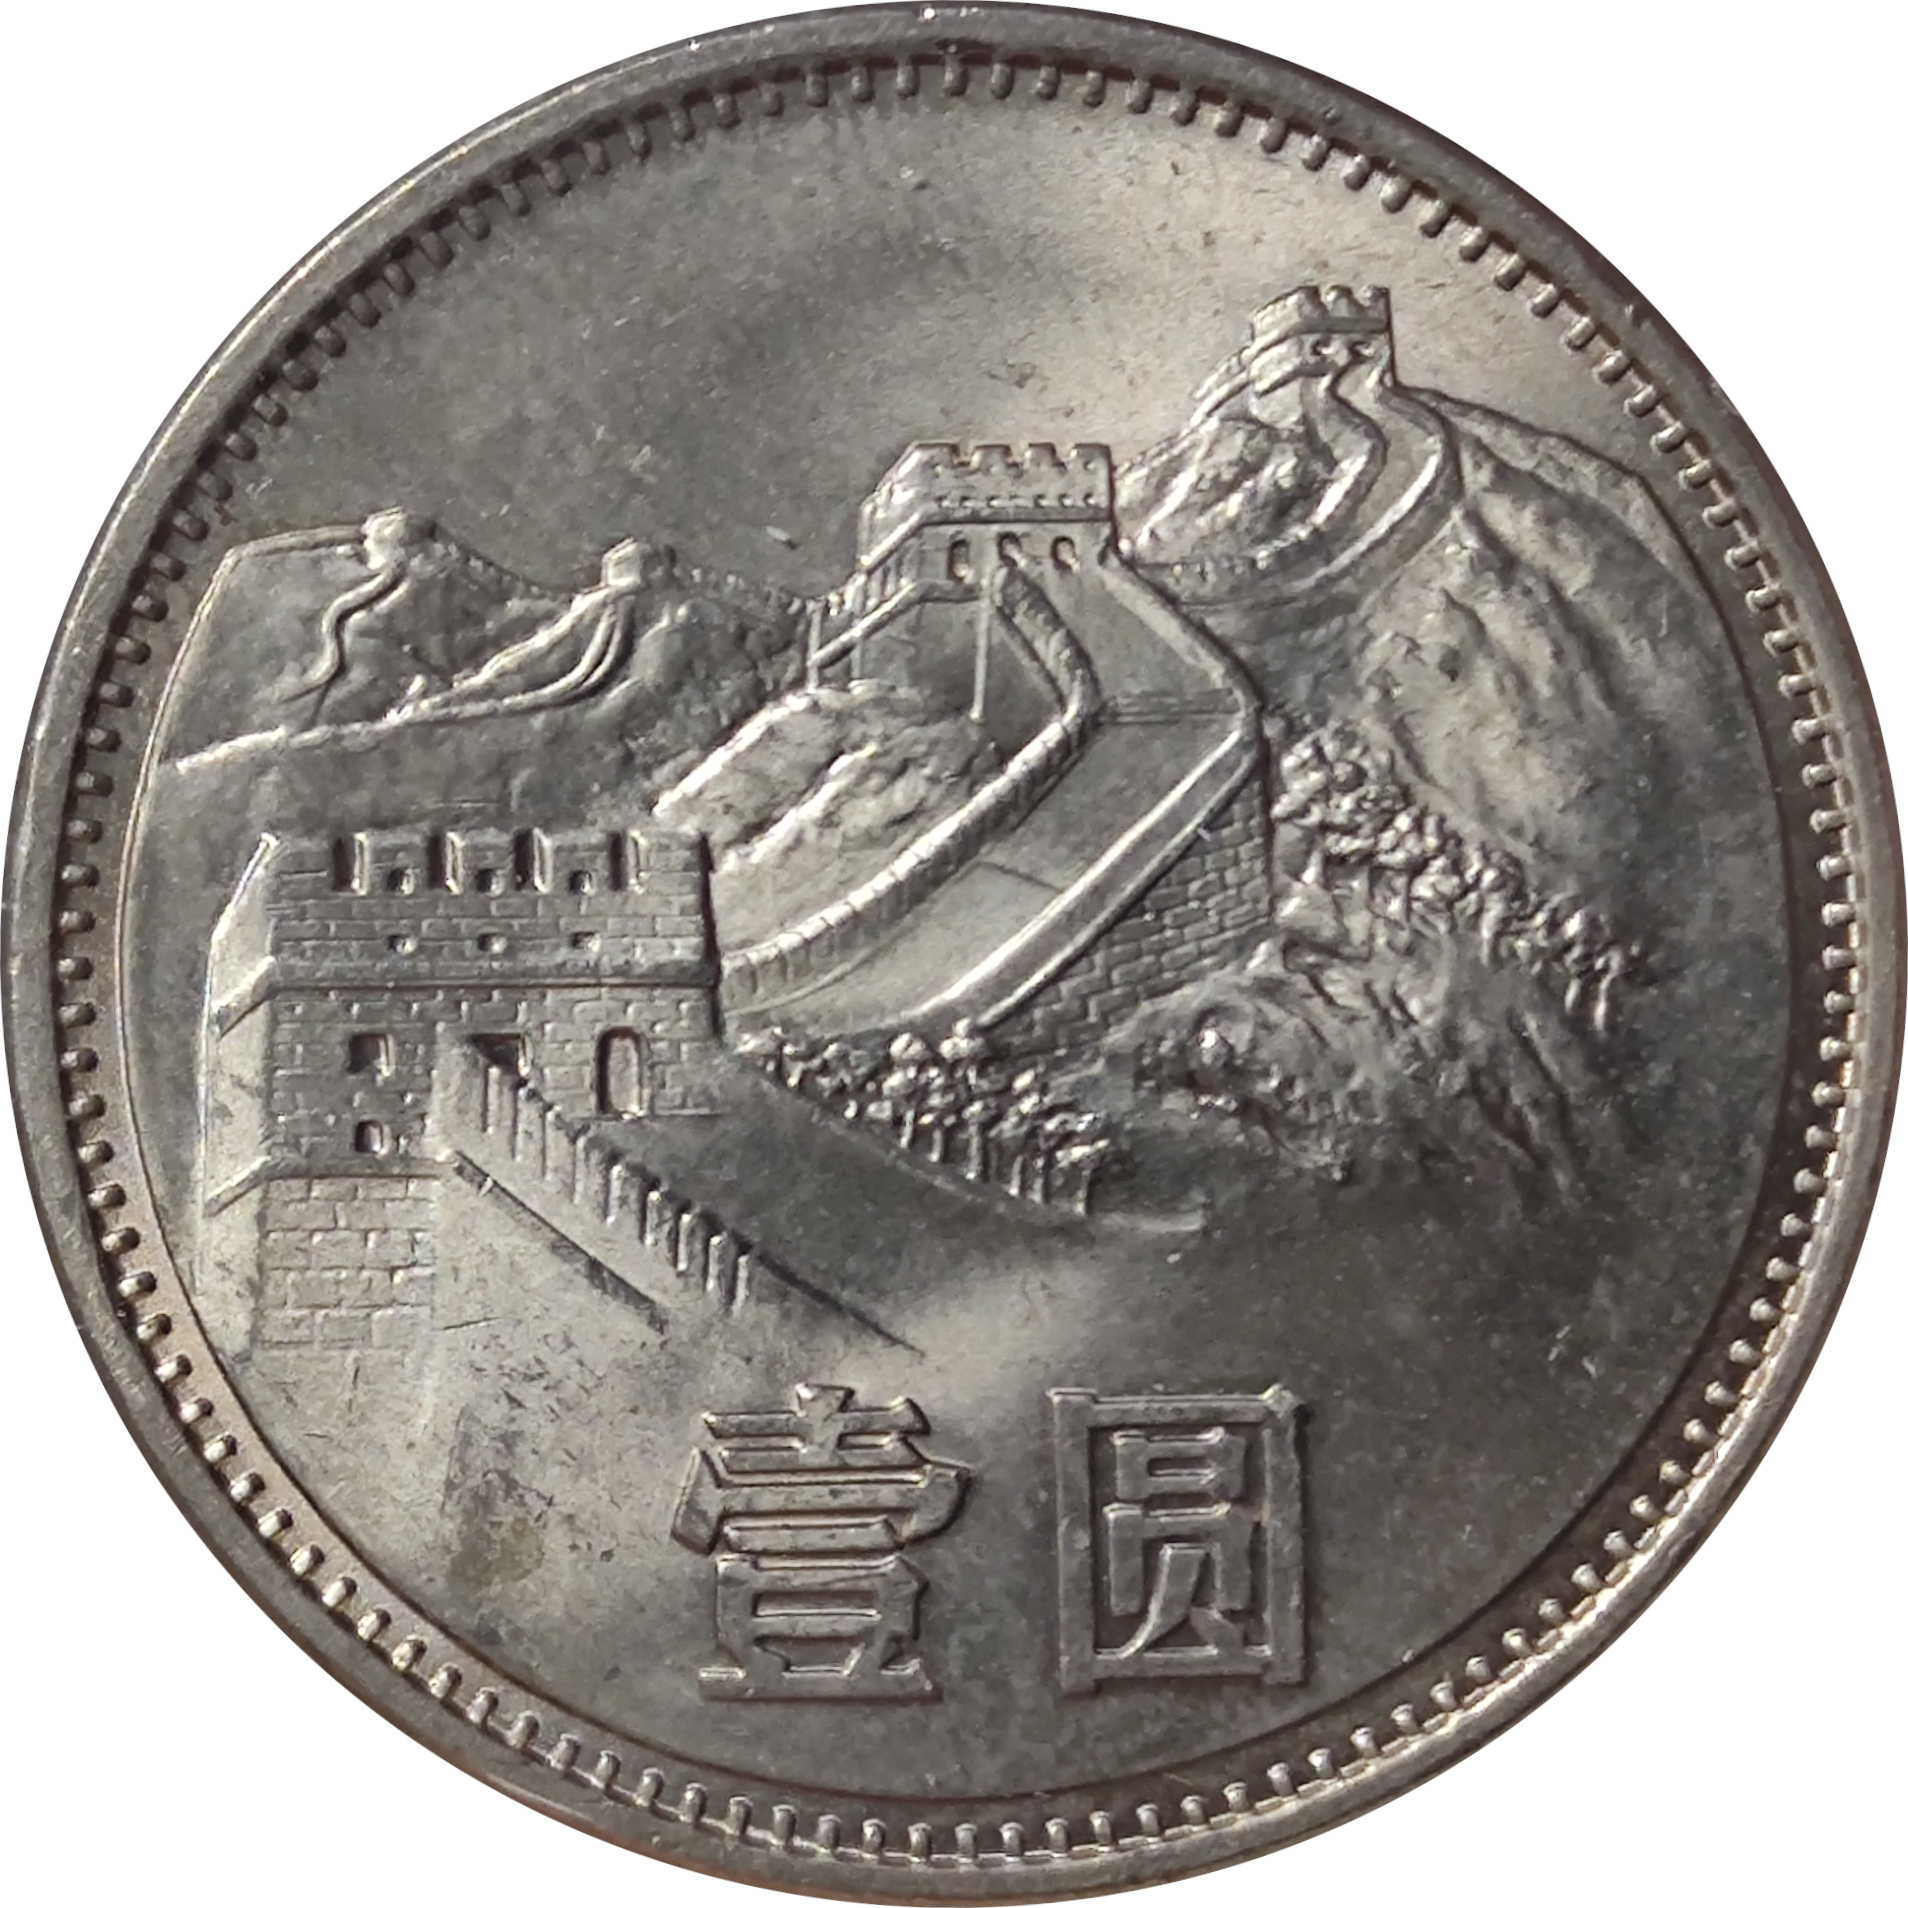 1 yuan - Wall of China